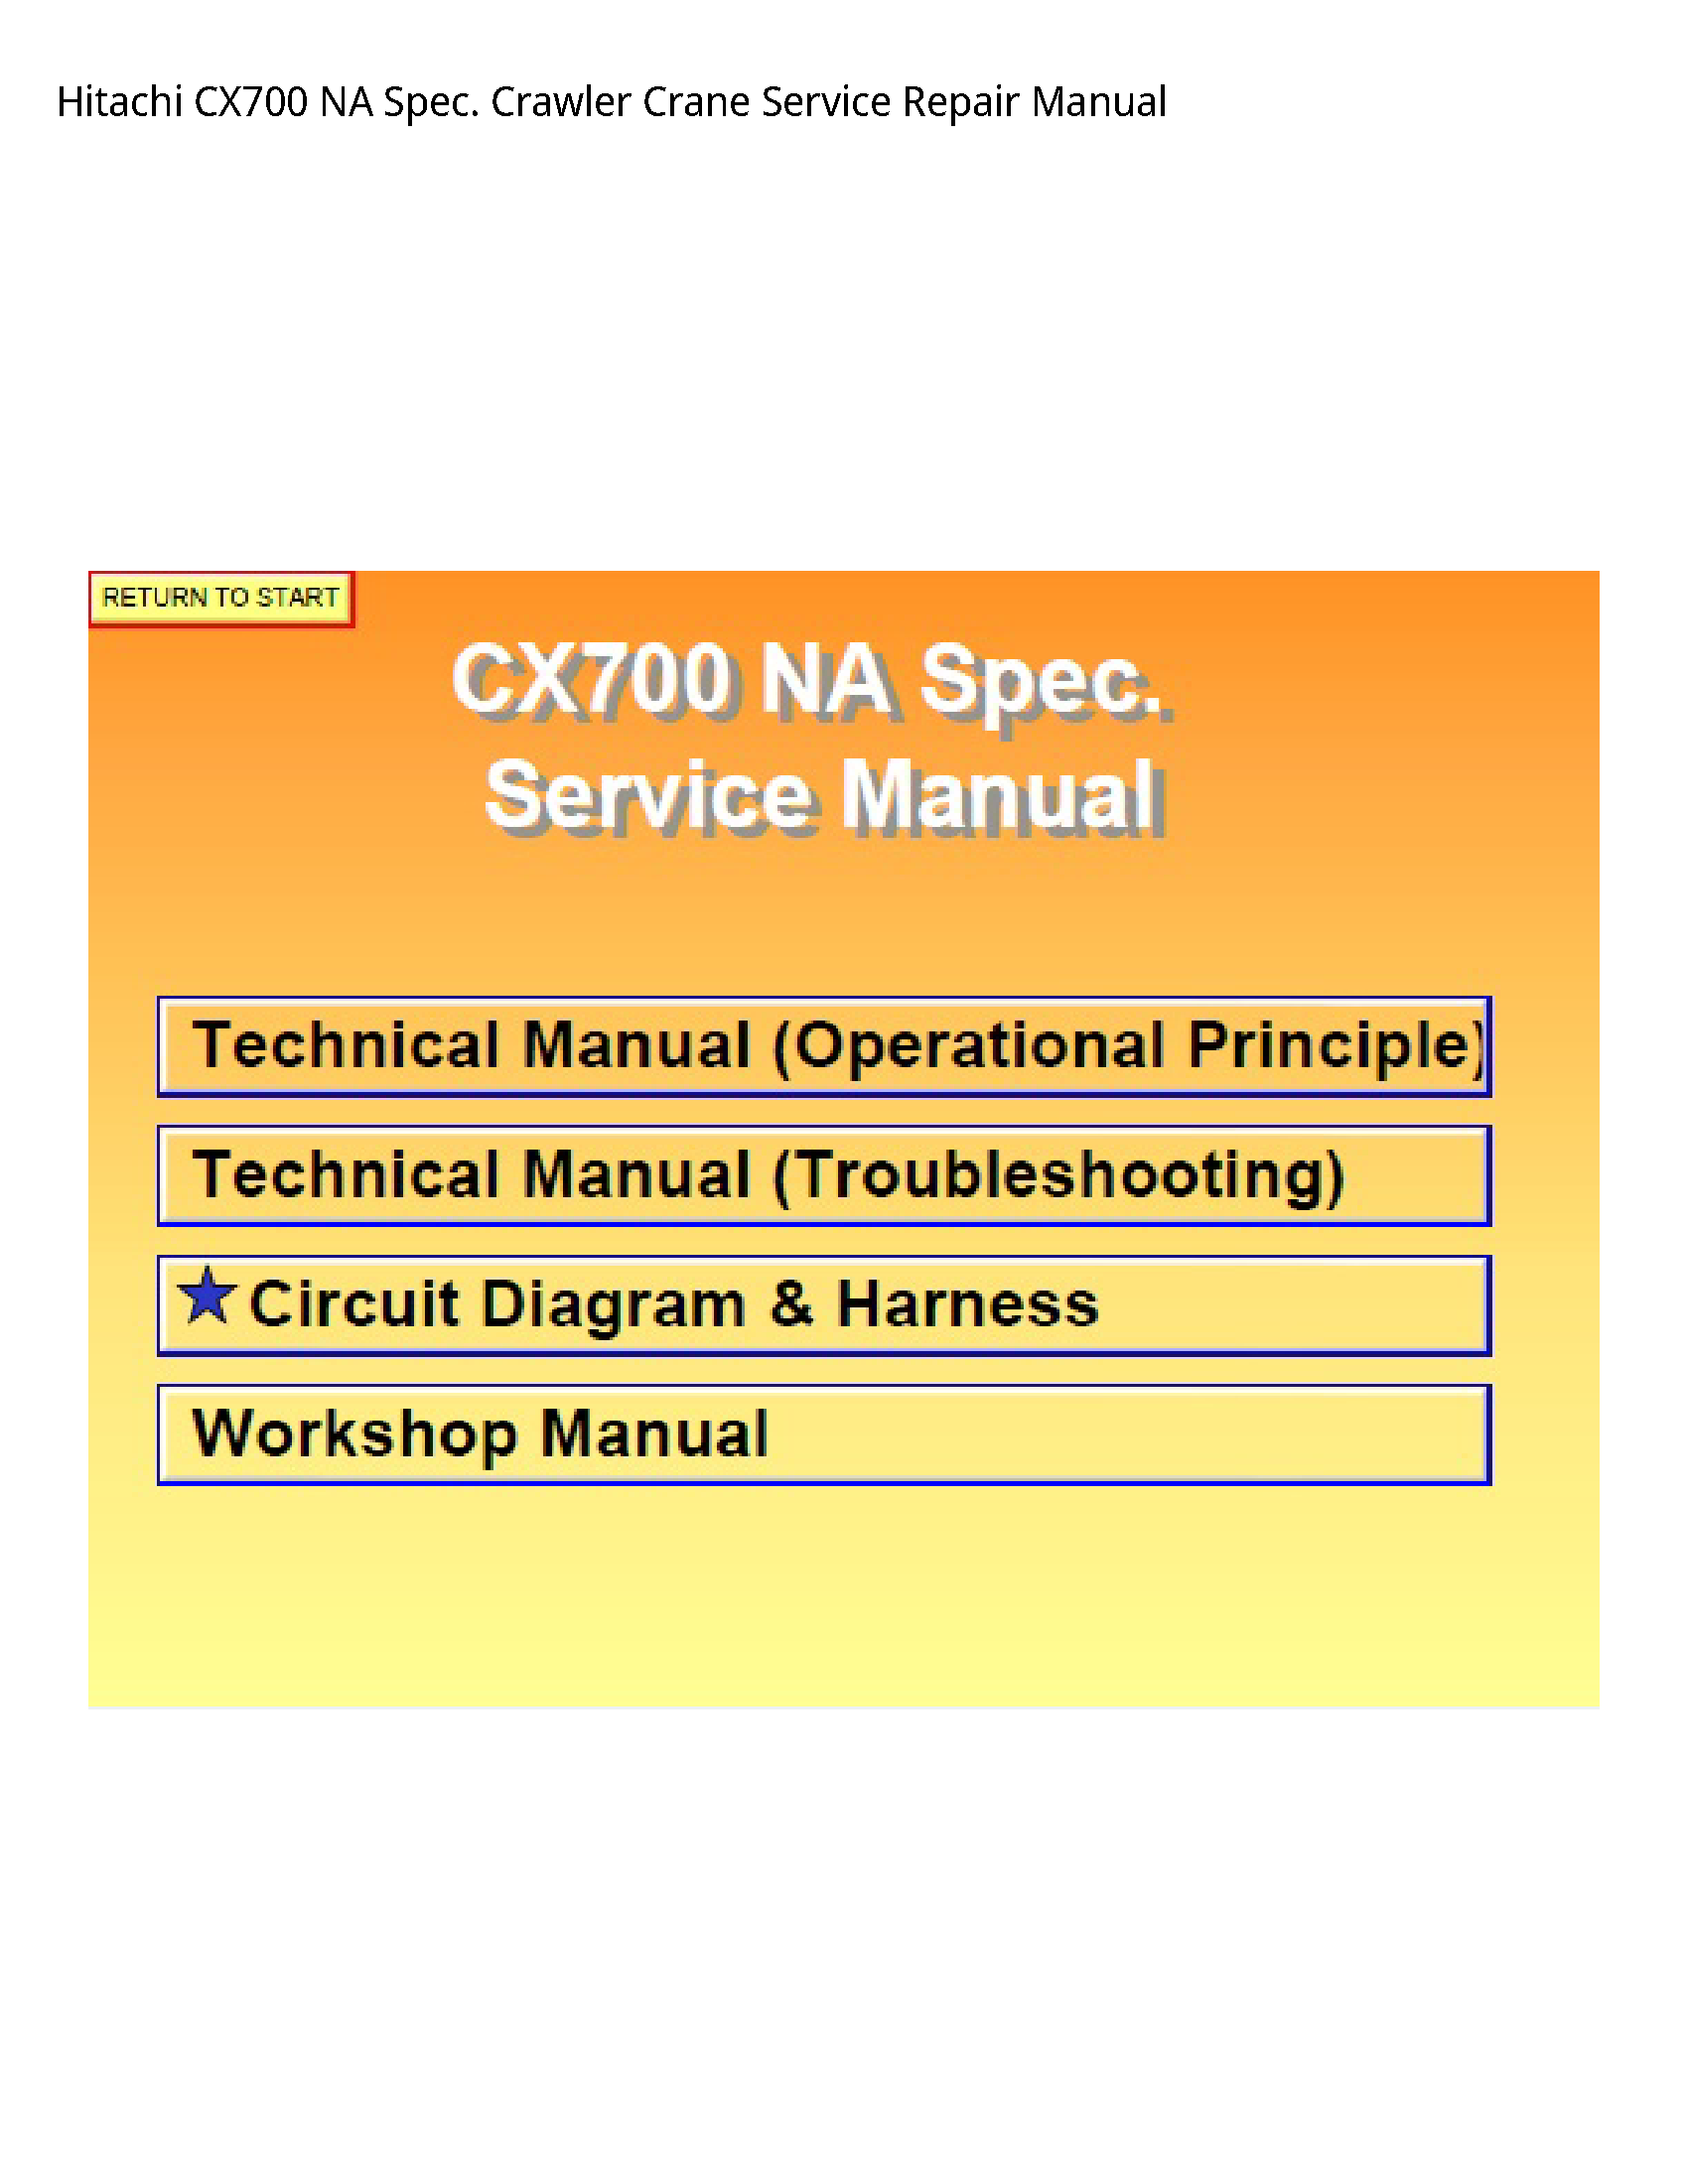 Hitachi CX700 NA Spec. Crawler Crane manual